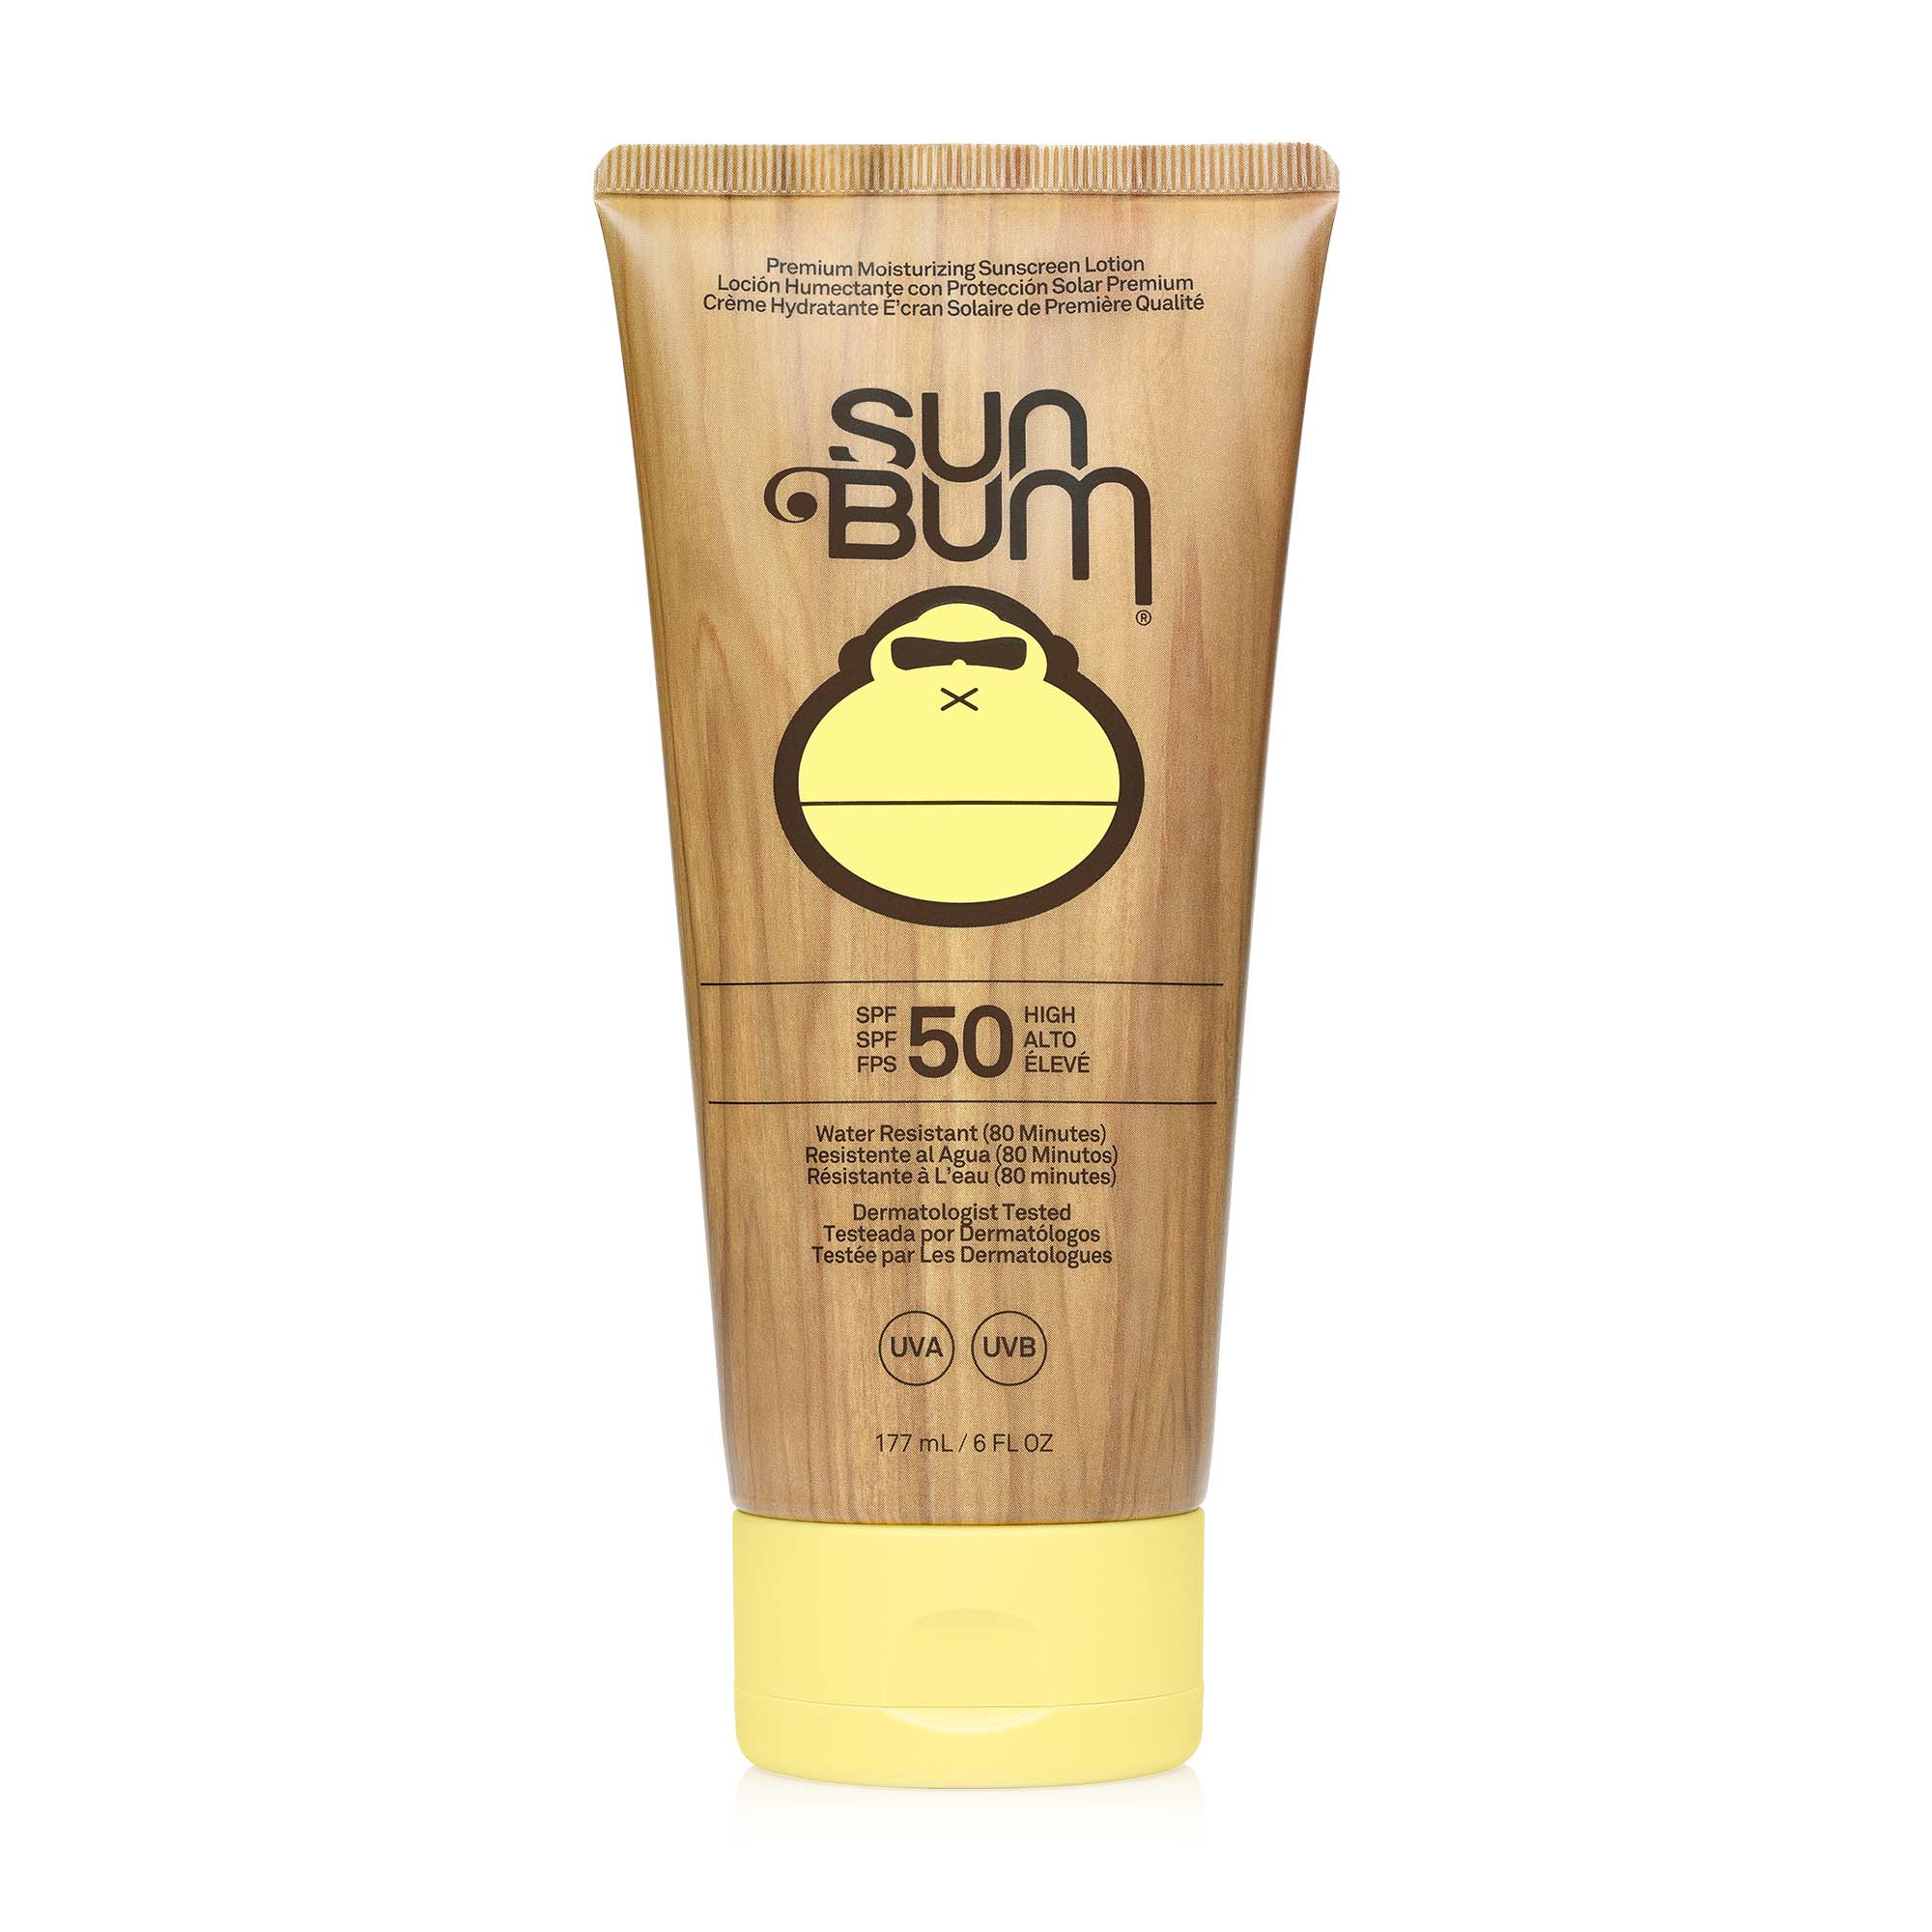 SUNBUM SUN BUM Original SPF 50 Sunscreen Lotion